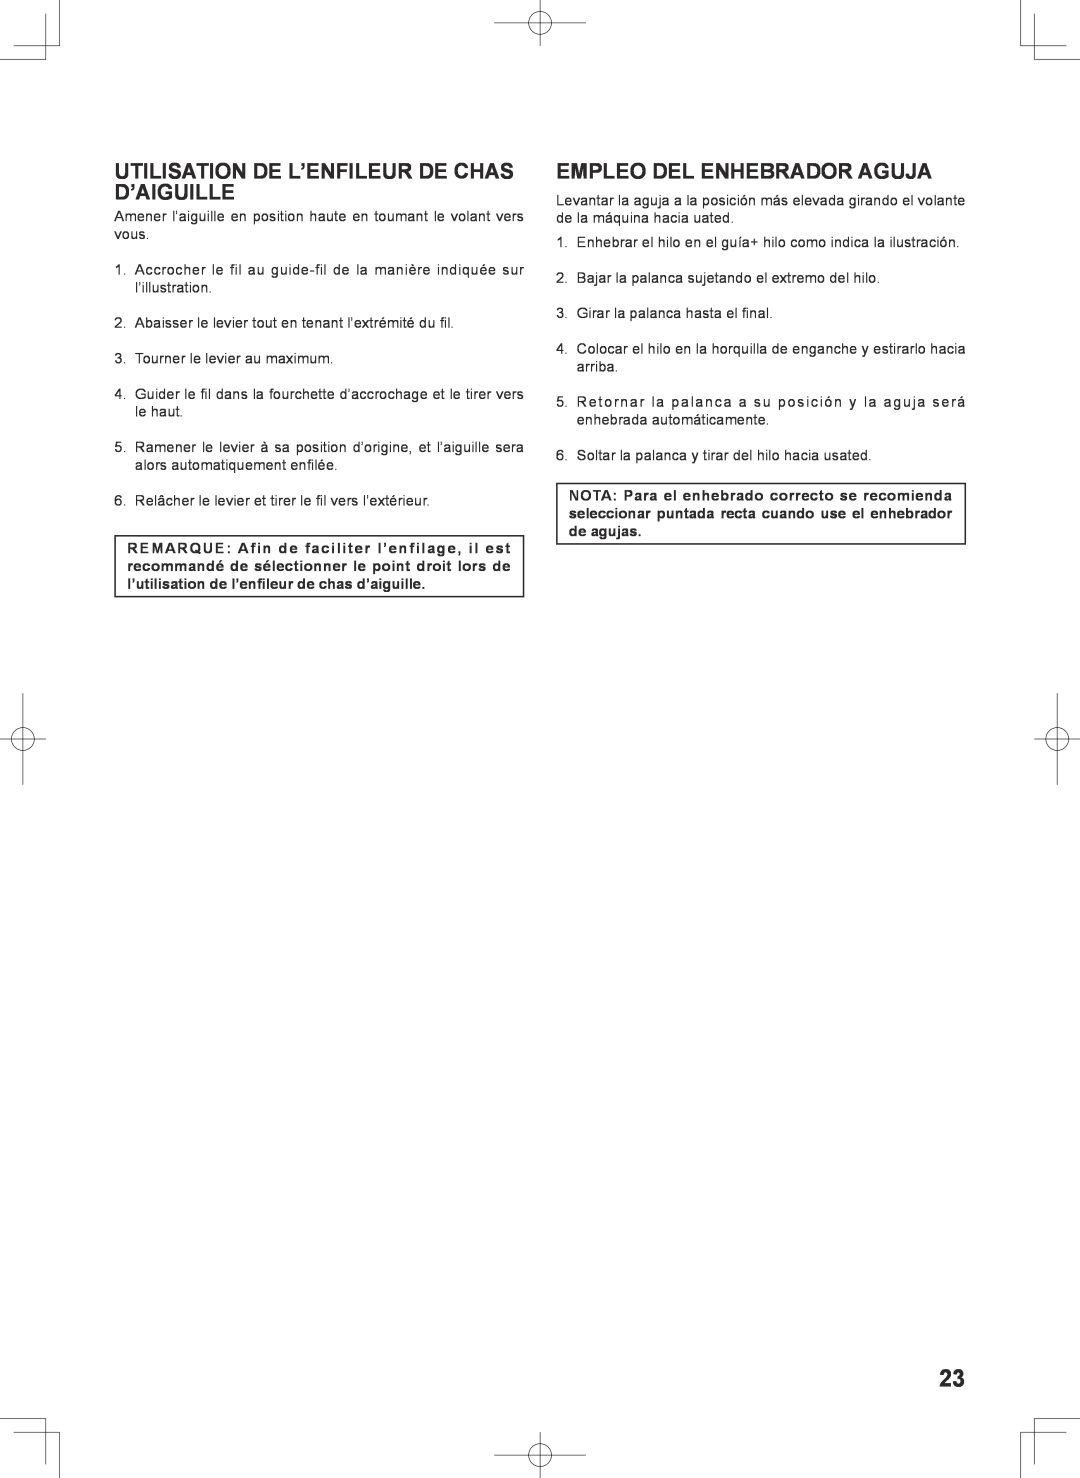 Singer 7467S instruction manual Utilisation De L’Enfileur De Chas D’Aiguille, Empleo Del Enhebrador Aguja 